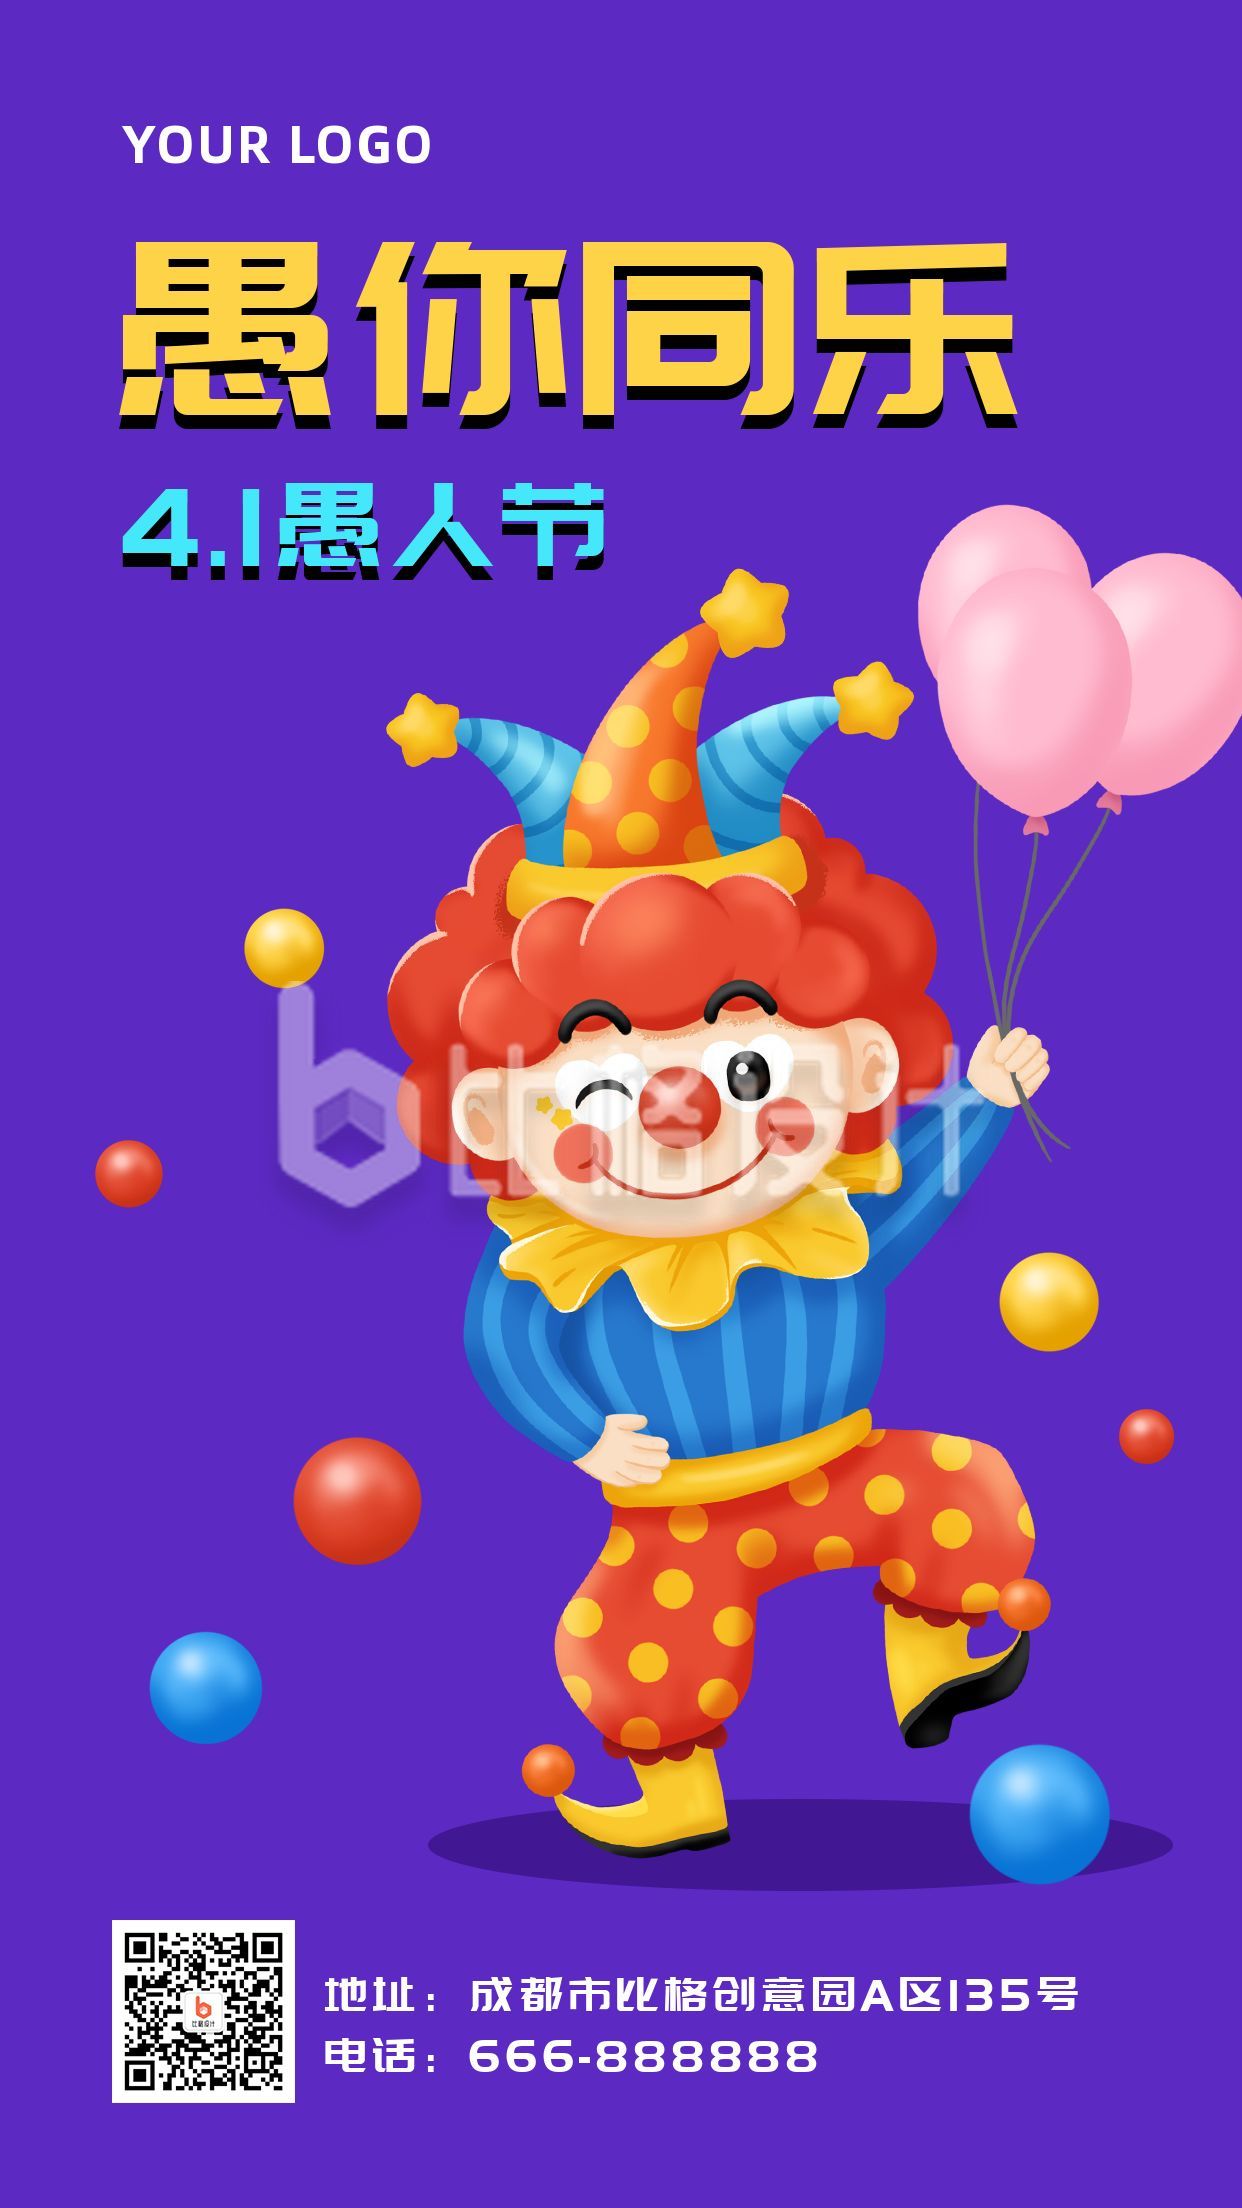 愚人节快乐可爱小丑趣味插画手机海报